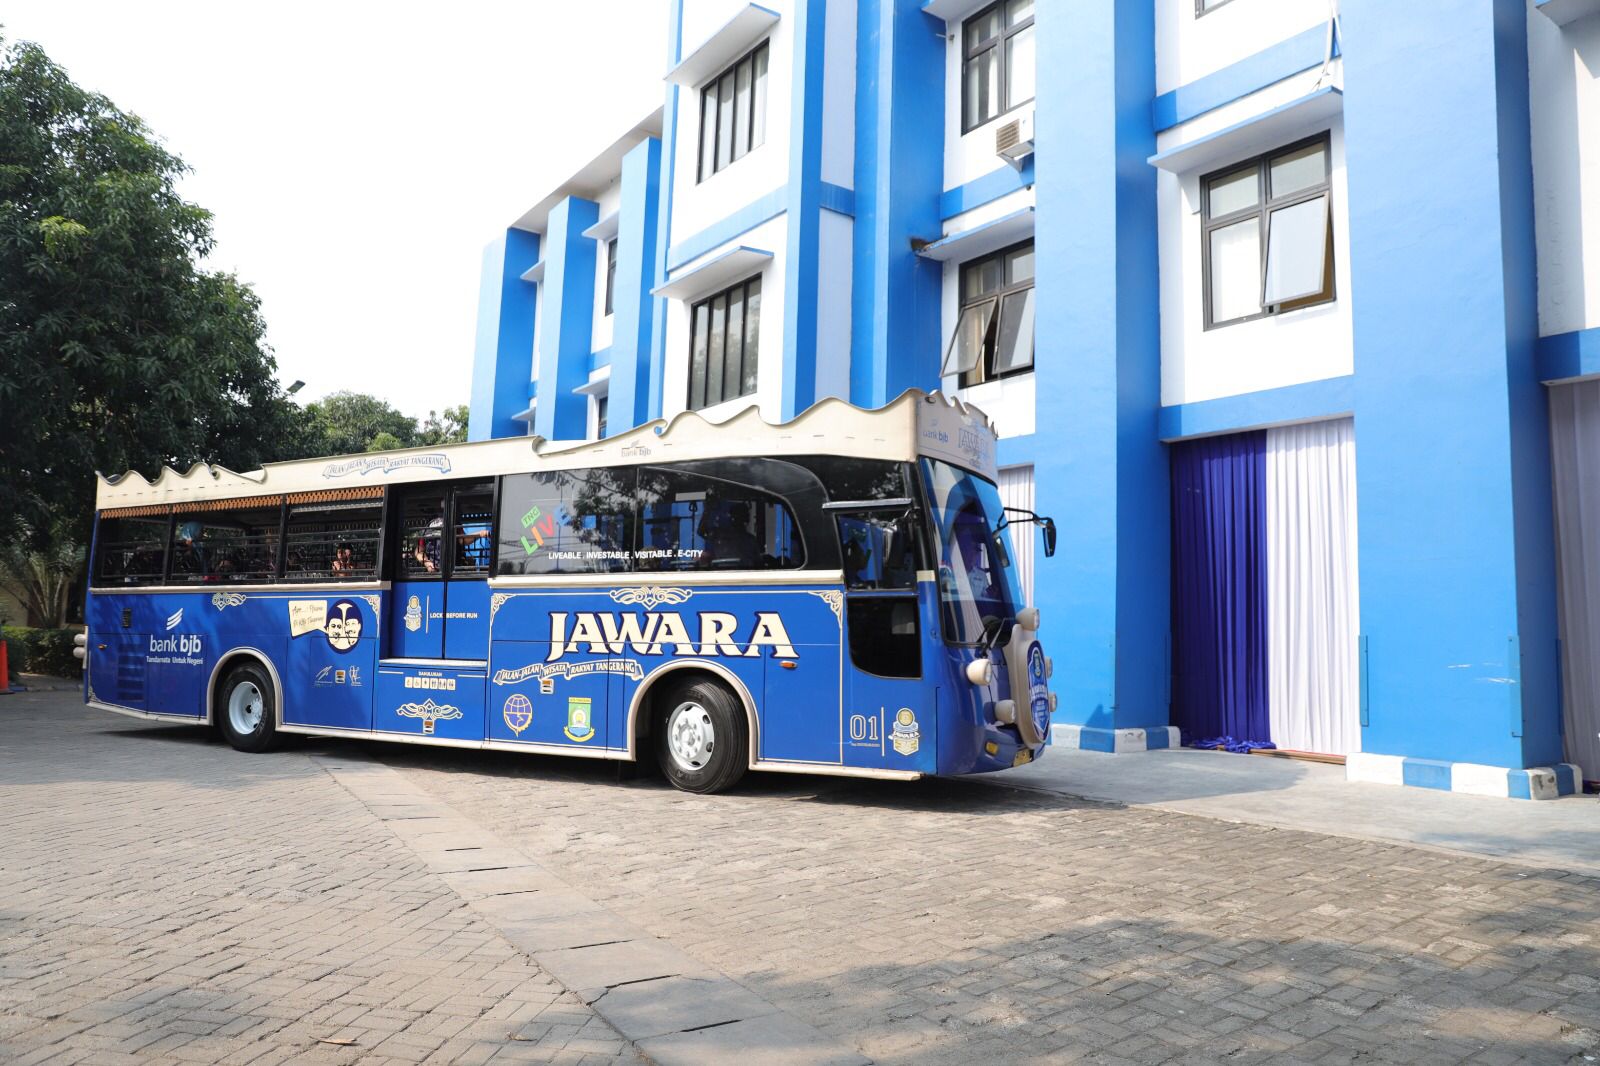 Cara booking Bus Jawara sangat mudah dilakukan